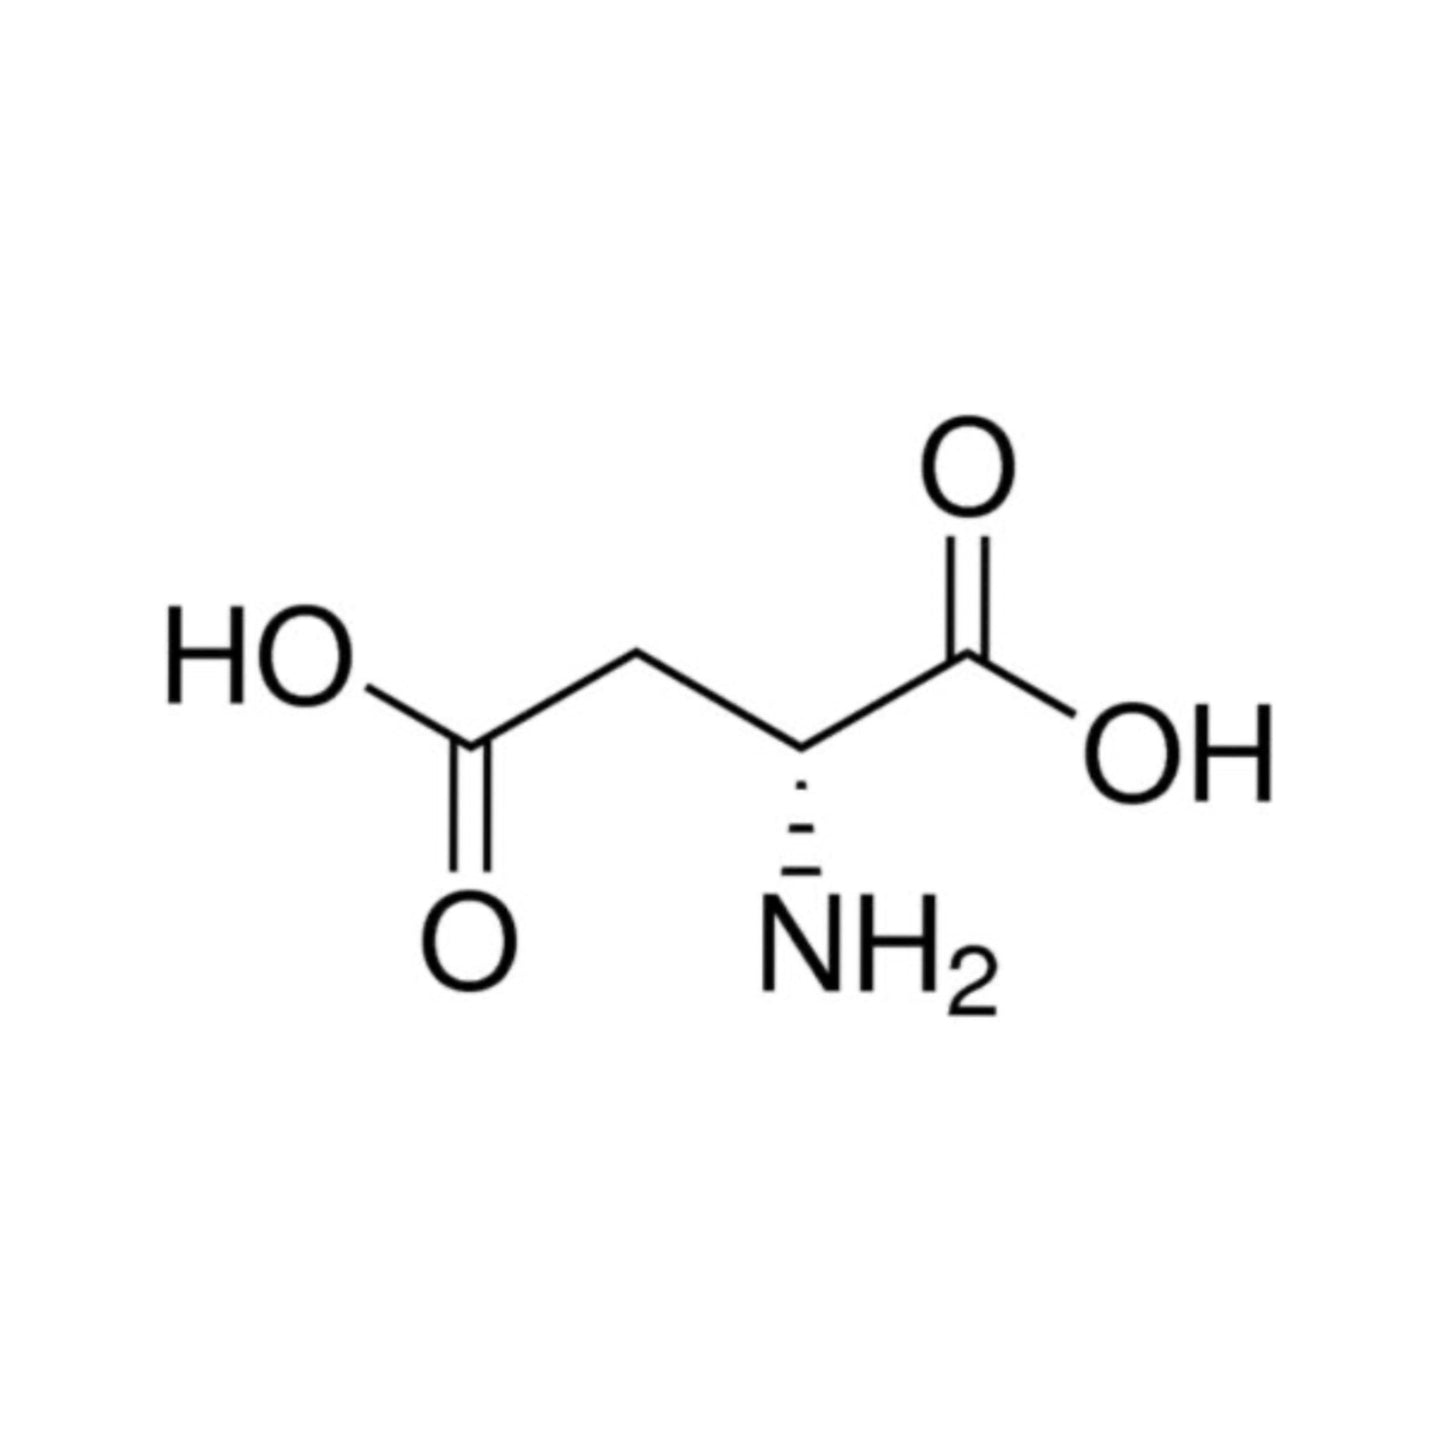 3 D-Aspartic Acid - Three Ingredients